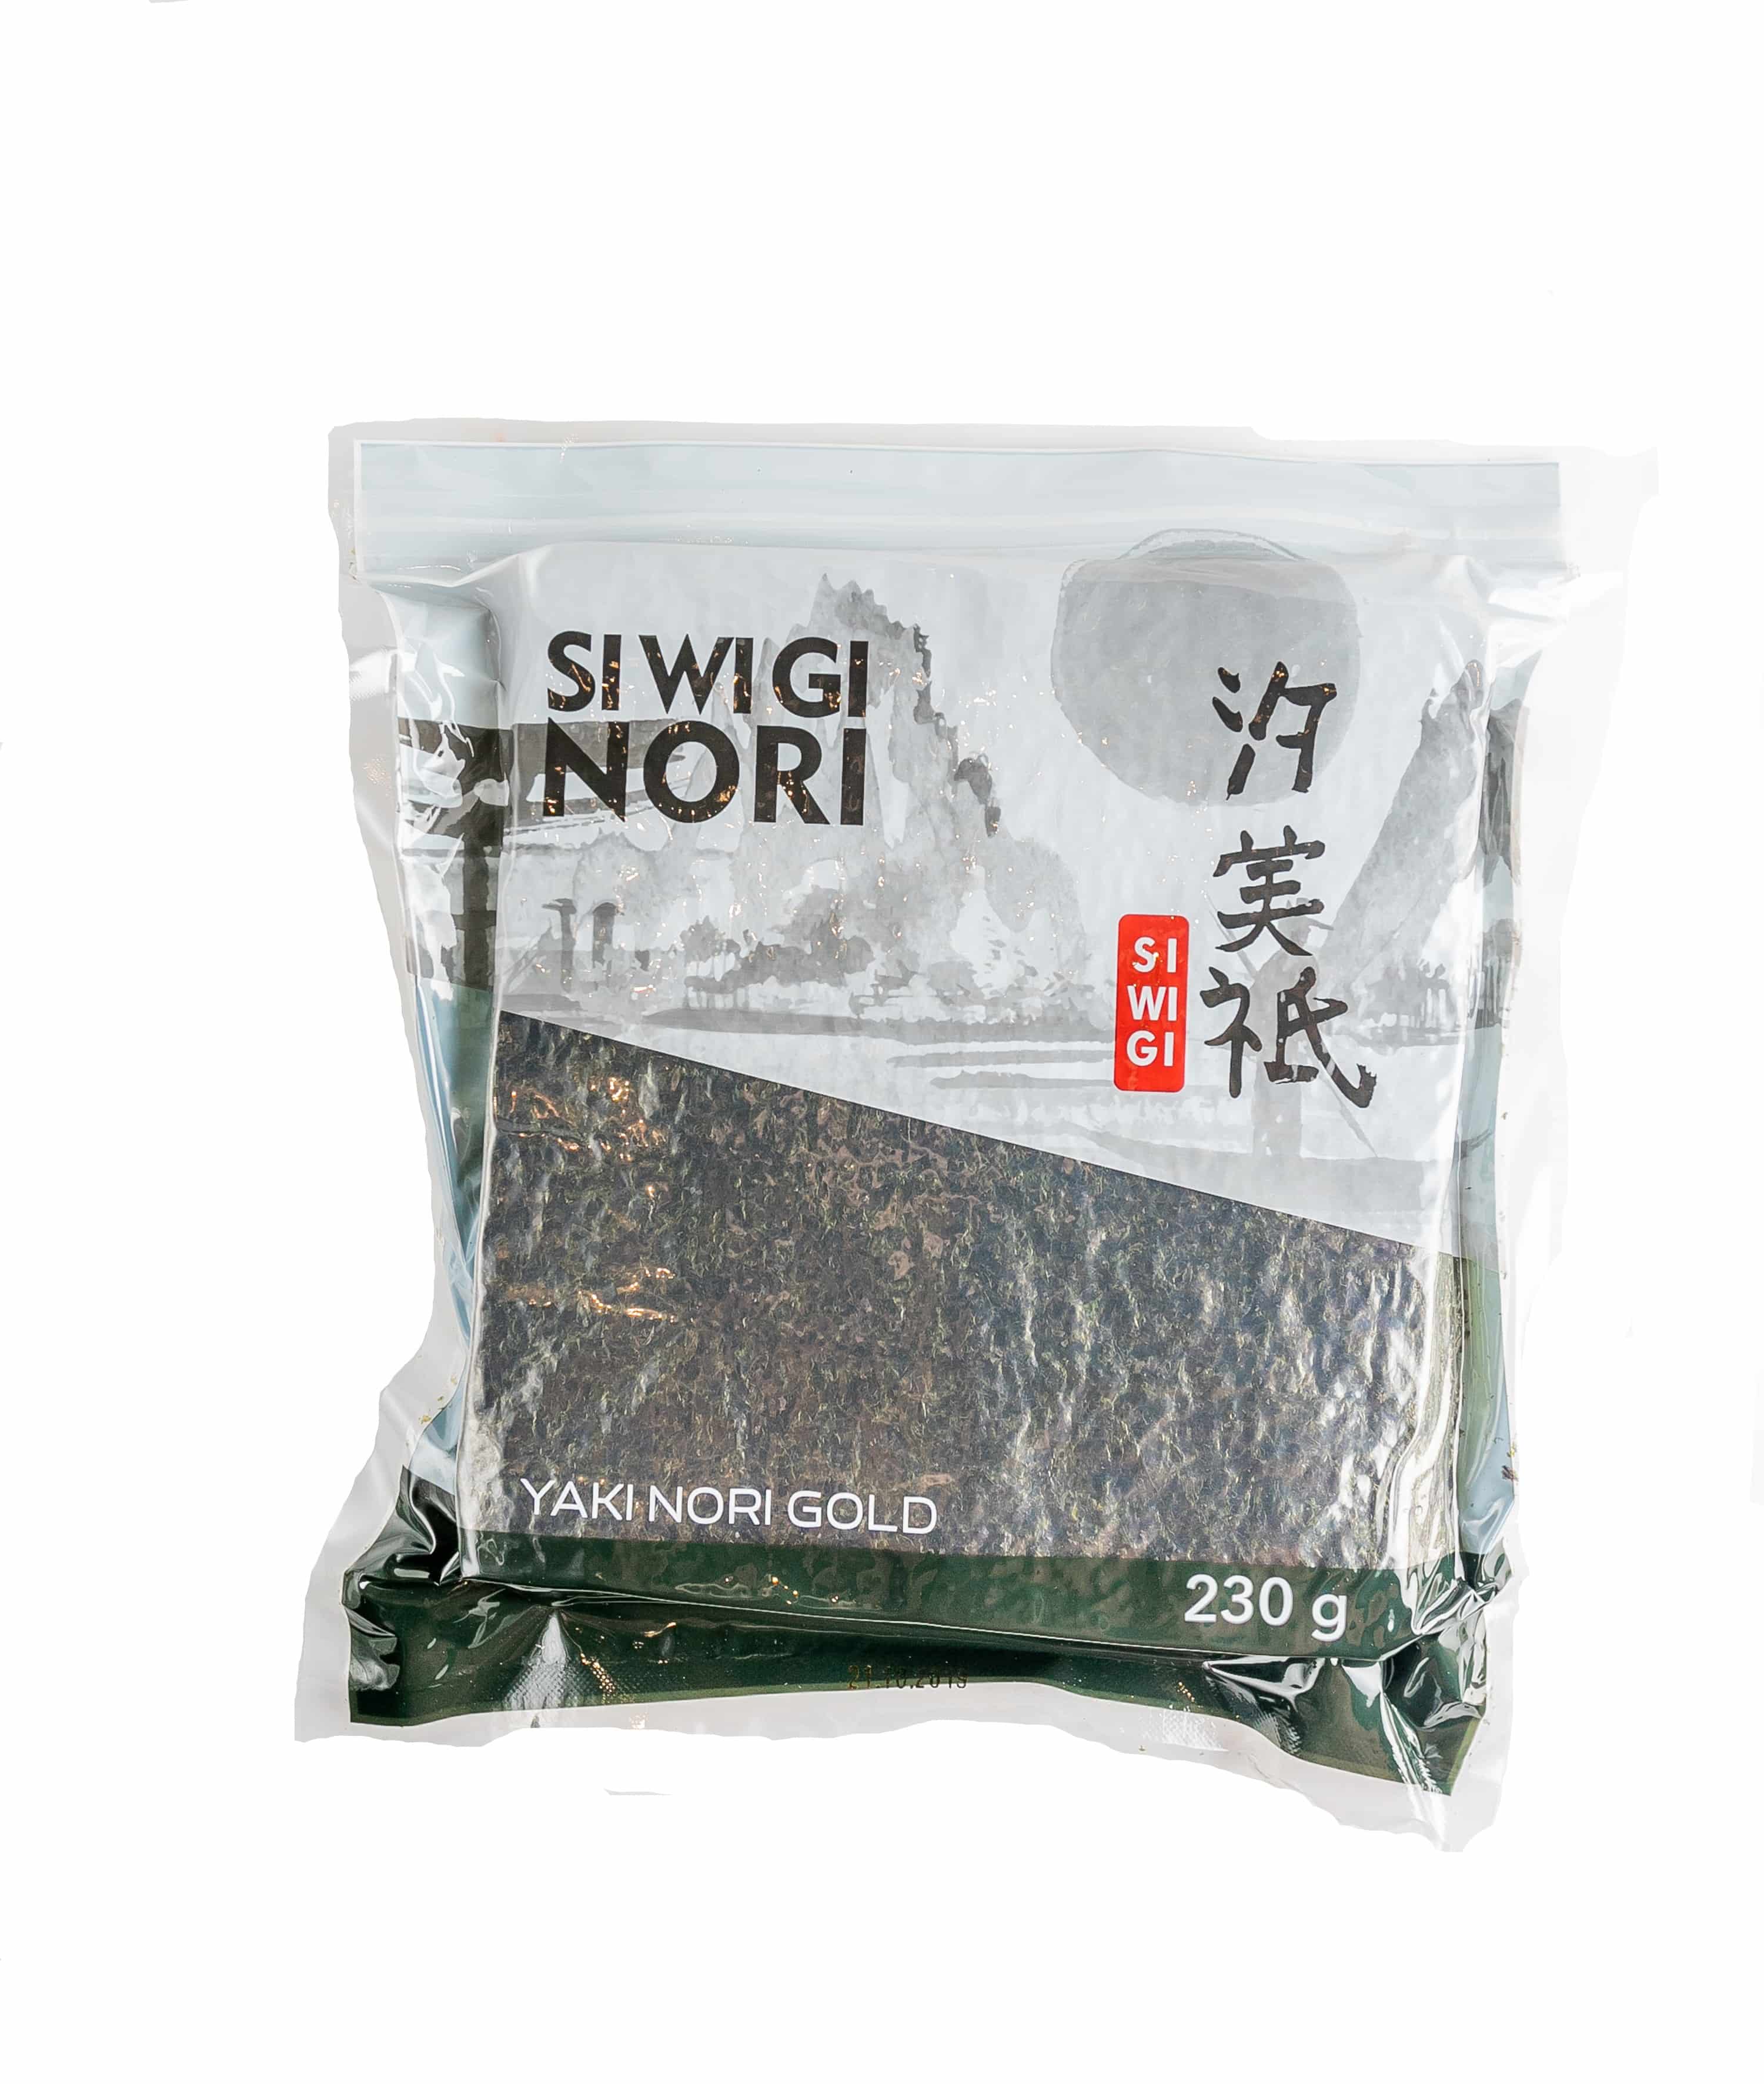 Нори Сивиги - это водоросль, необходимая для приготовления суши и роллов.